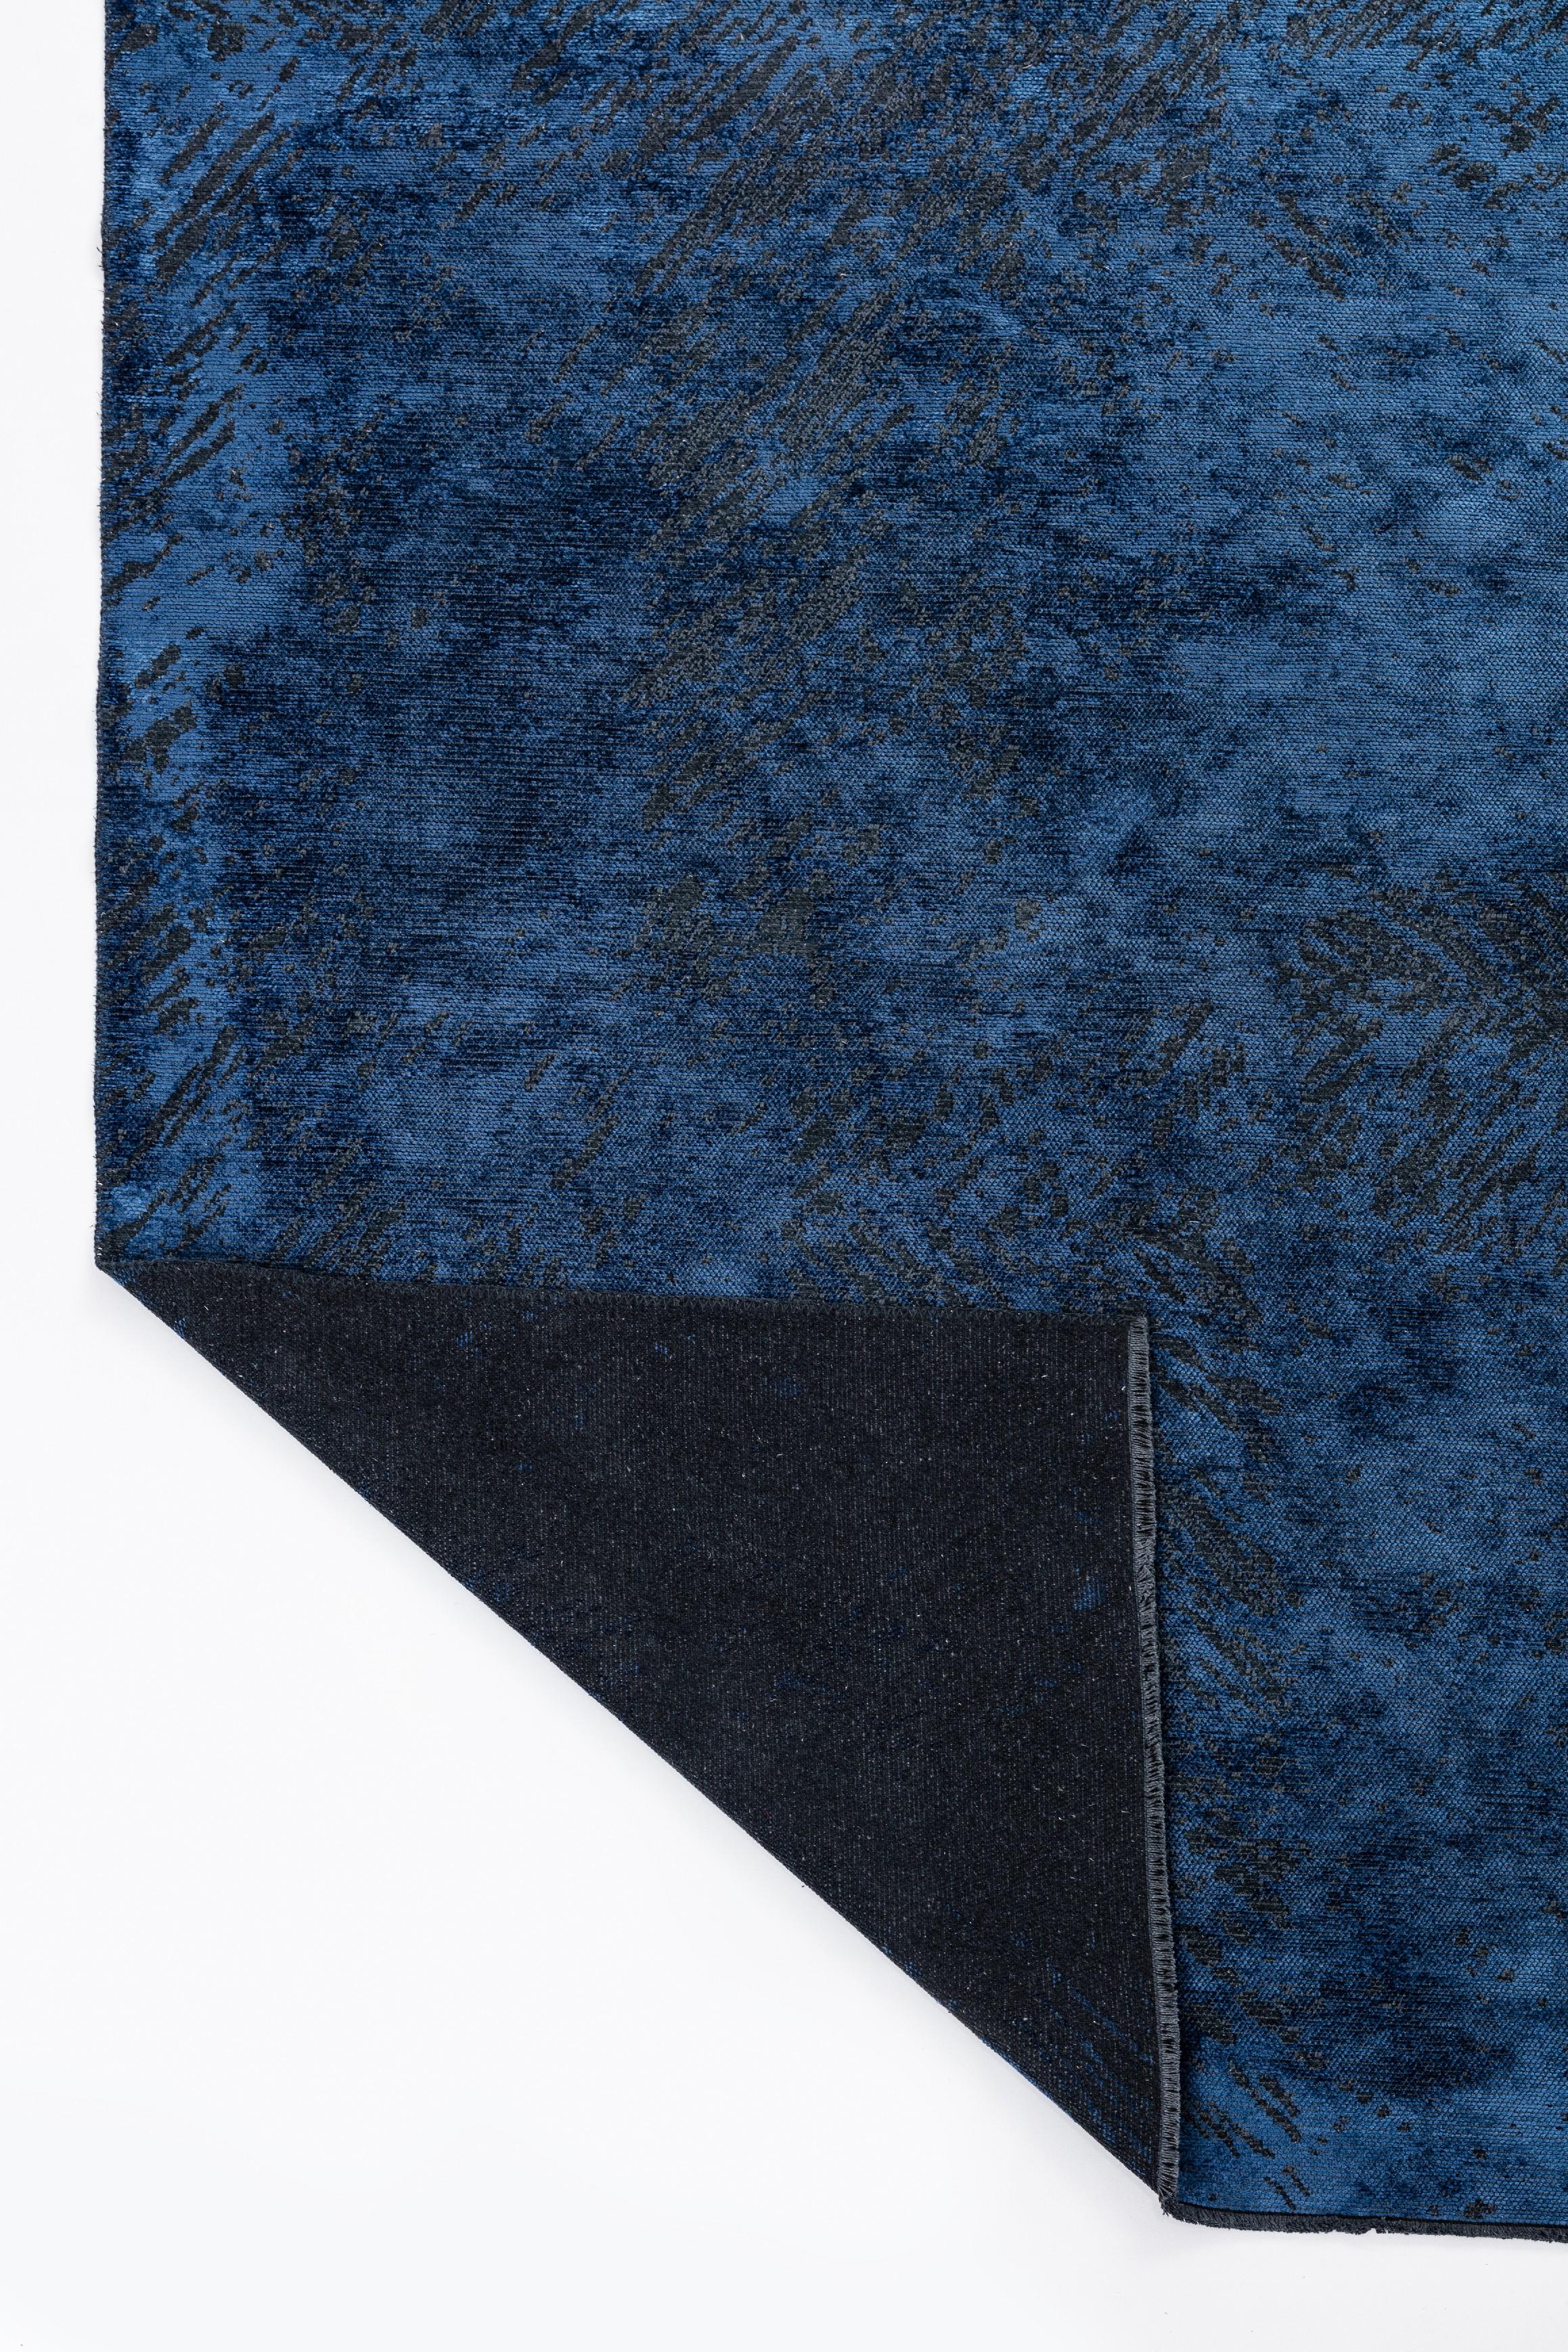 En vente :  (Bleu) Tapis de luxe abstrait moderne 3